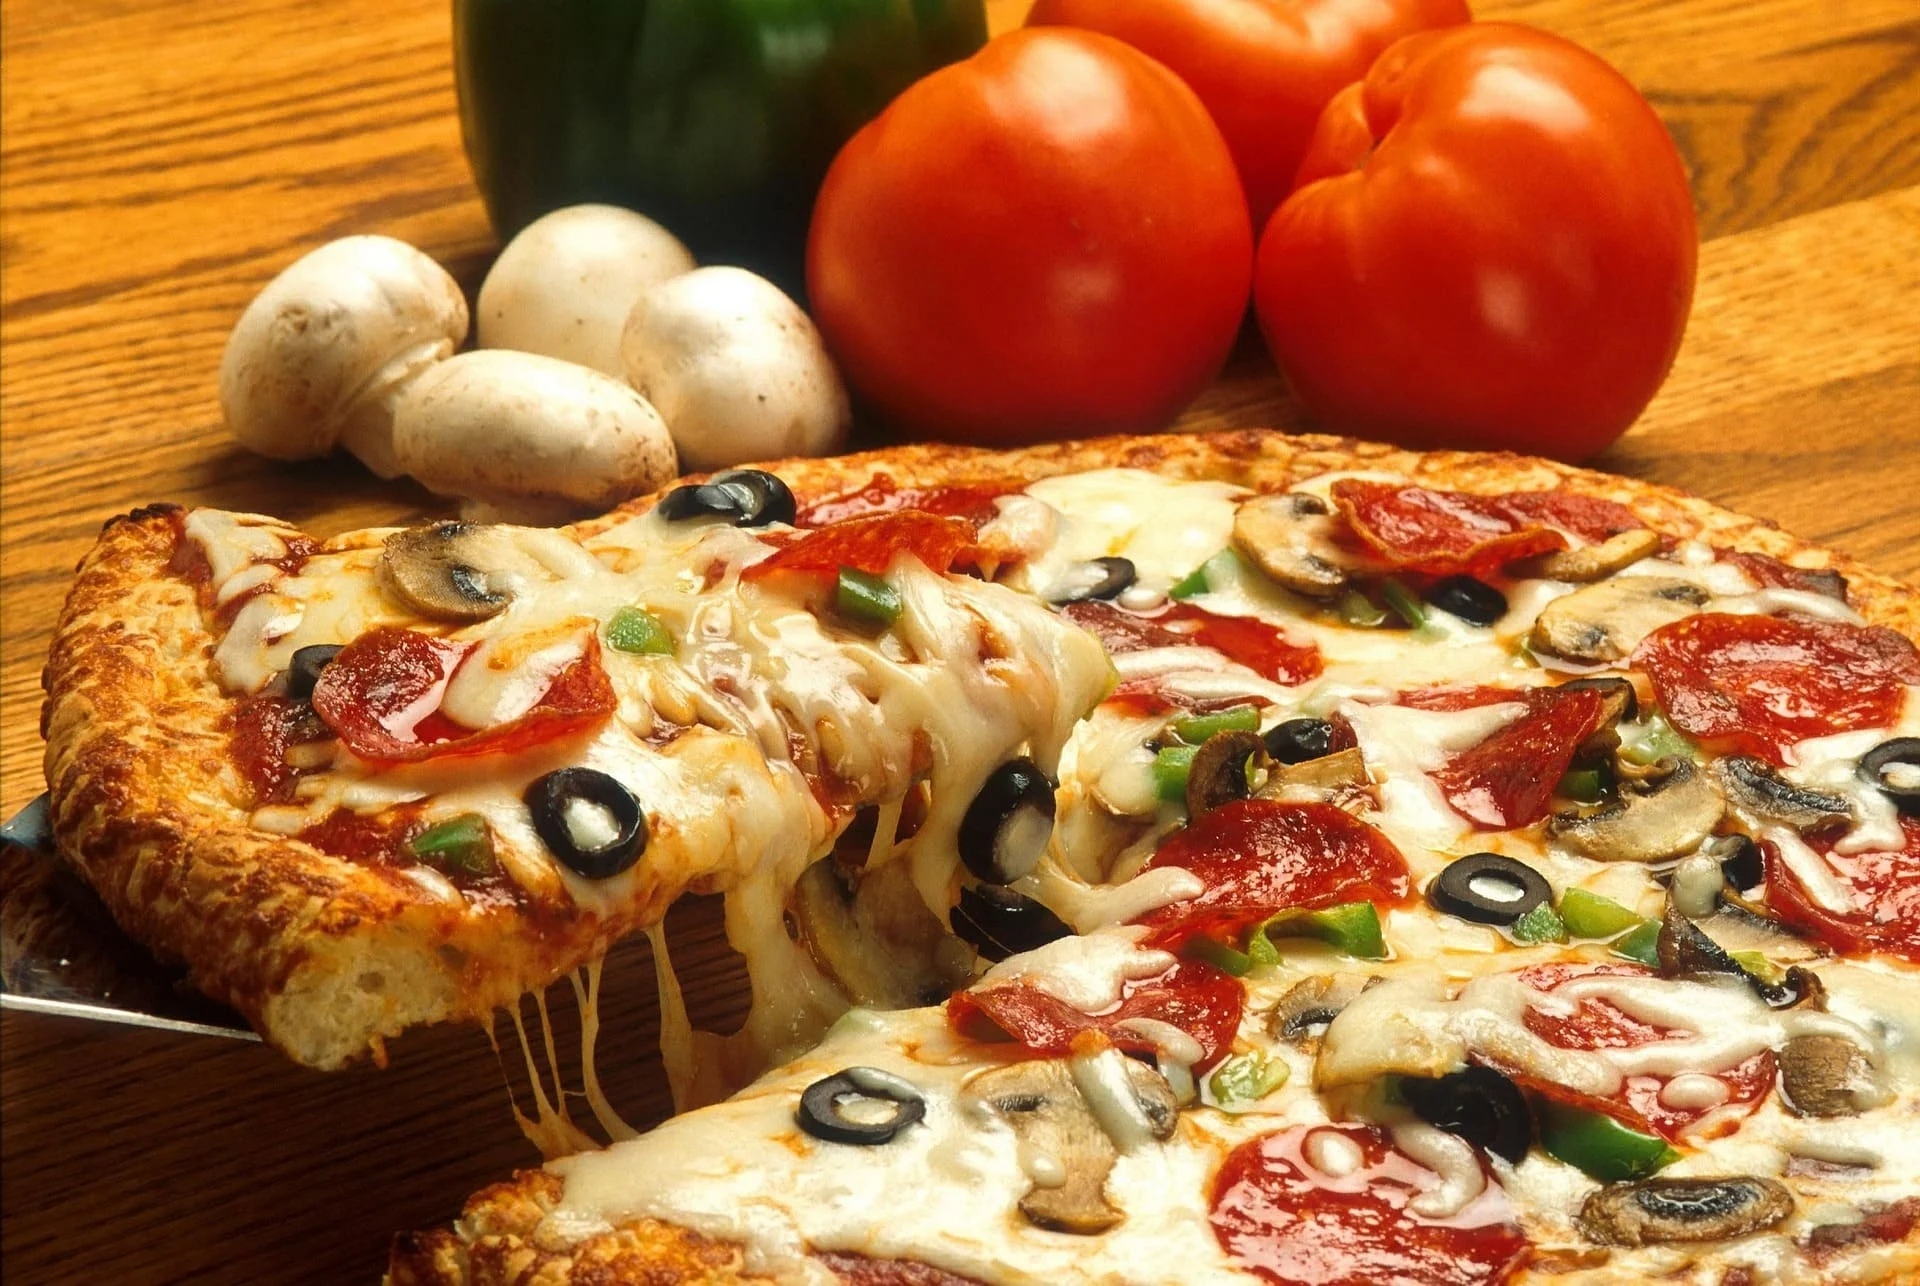 لازم تجربيها.. طريقة عمل عجينة البيتزا الإيطالية في البيت بمكونات إقتصادية بطعم يجنن زي المطاعم بالظبط